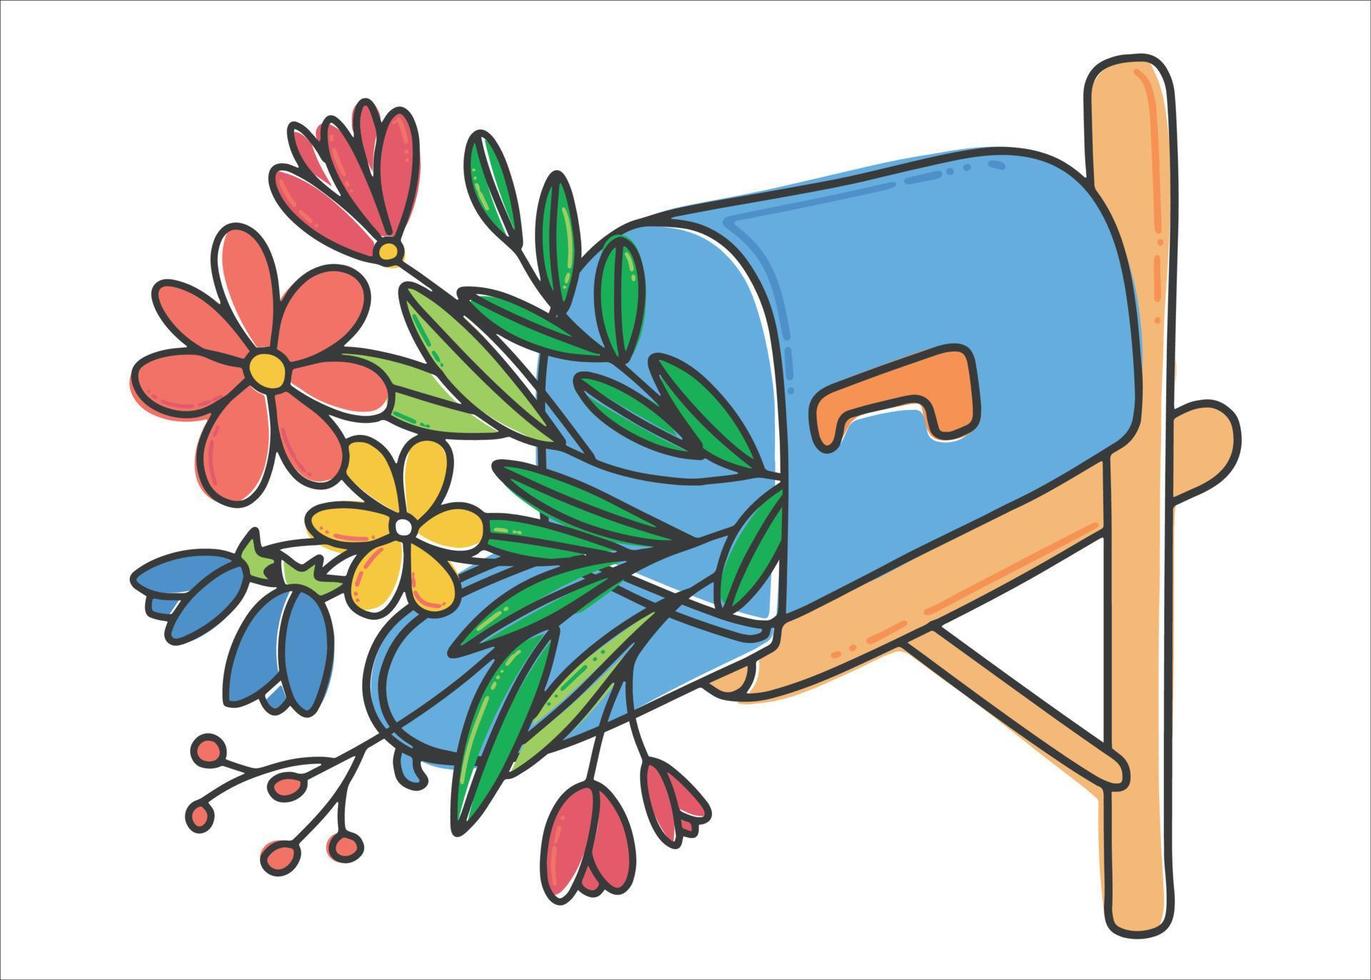 caixa de correio azul com flores. buquê de flores silvestres. correio romântico. ilustração vetorial em um estilo simples. vetor